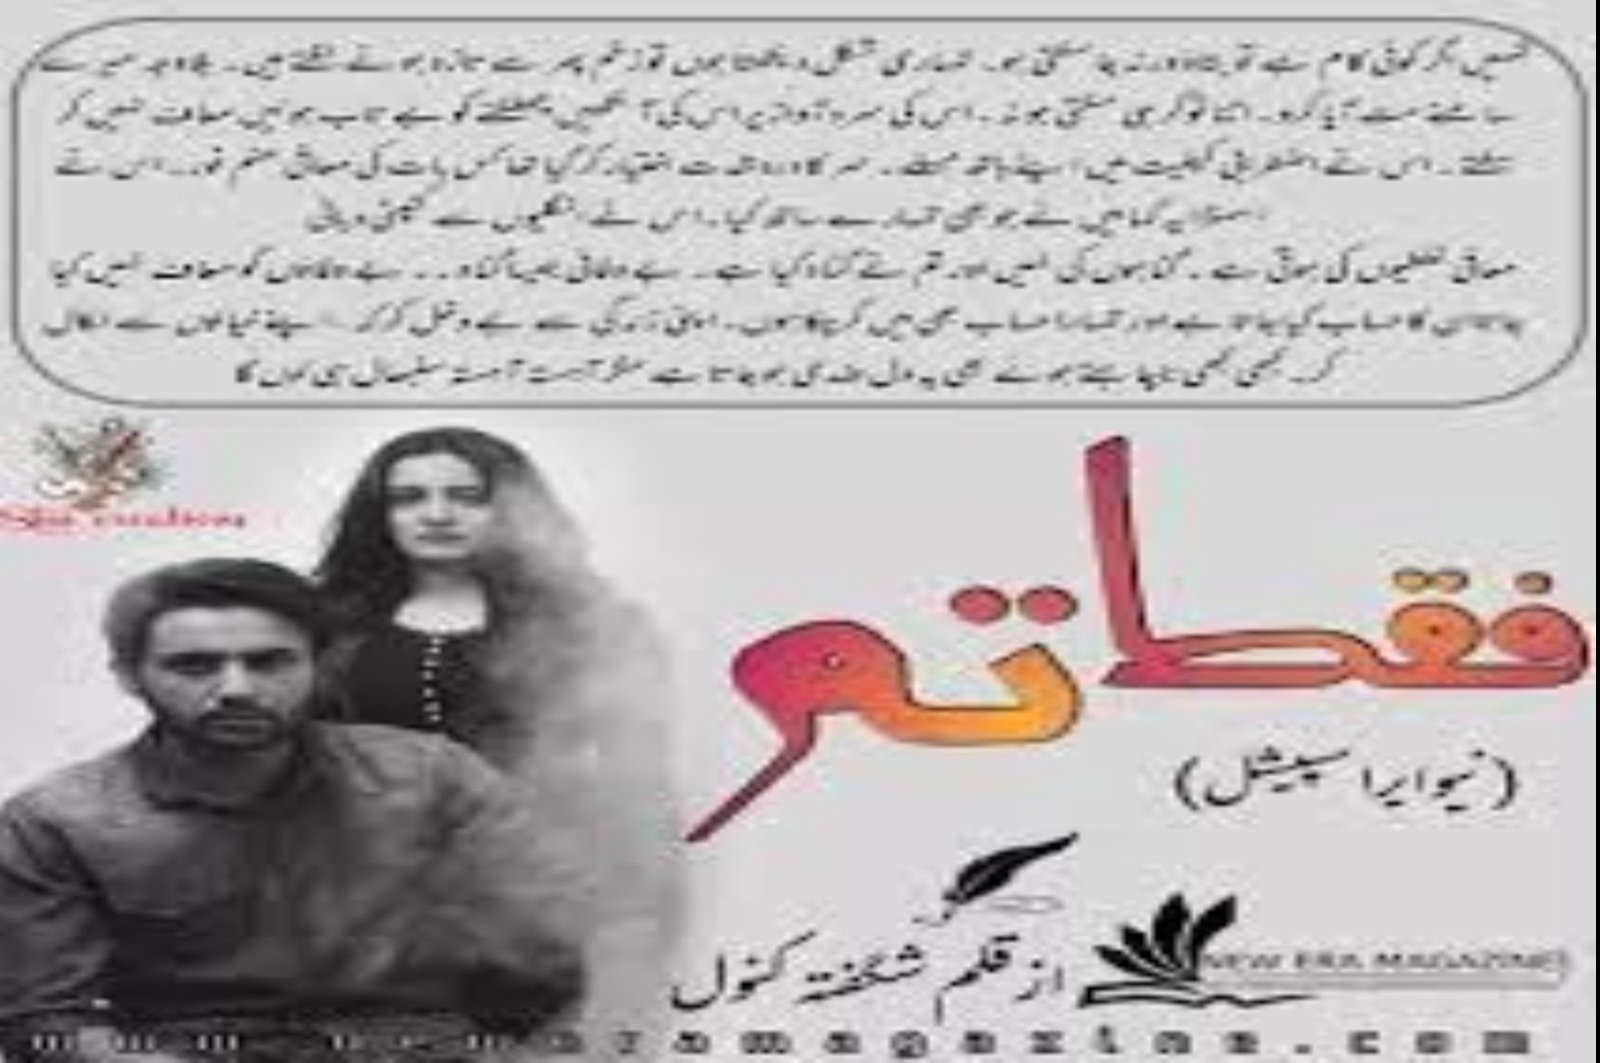 Faqat Tum Novel By Shagufta Kanwal